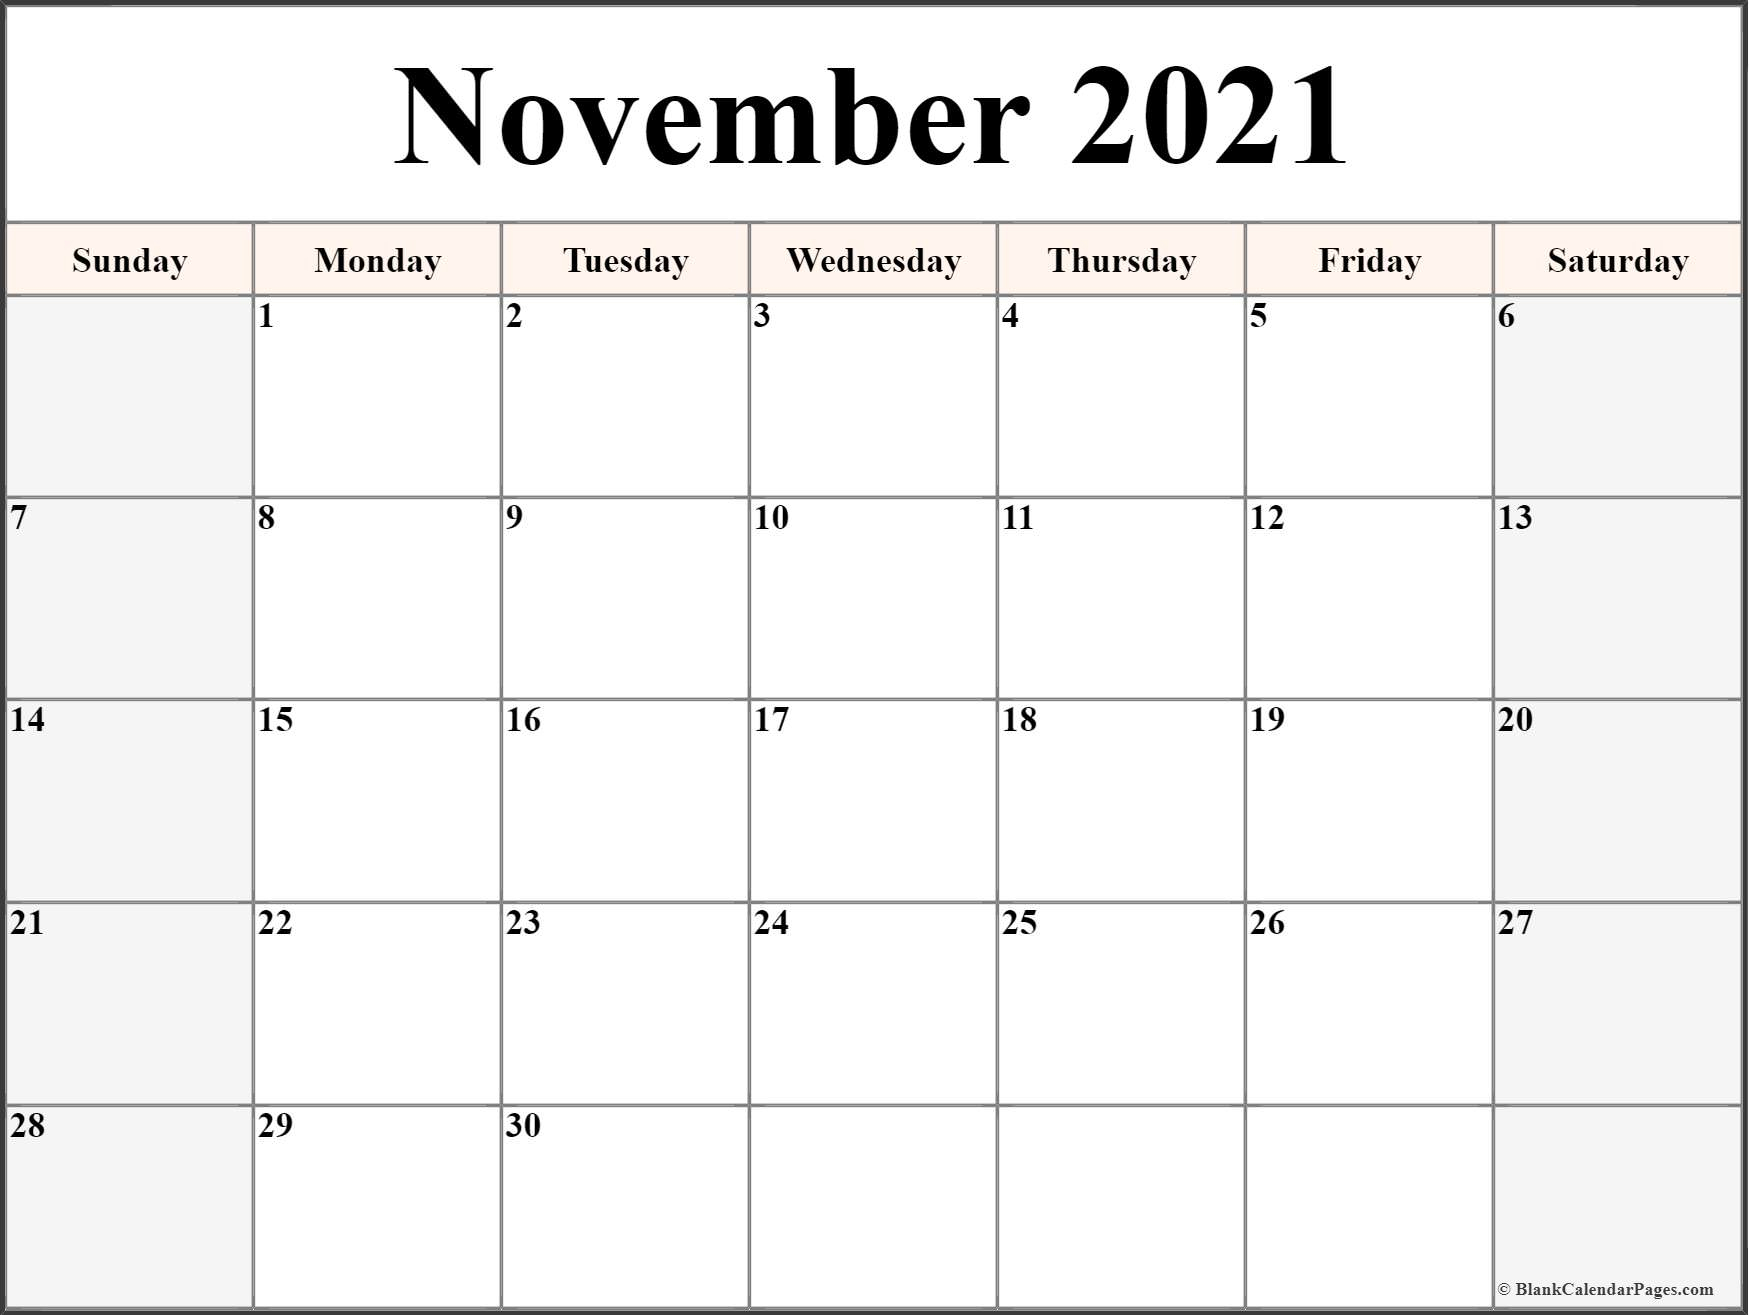 November 2021 Calendar | Free Printable Calendar Templates